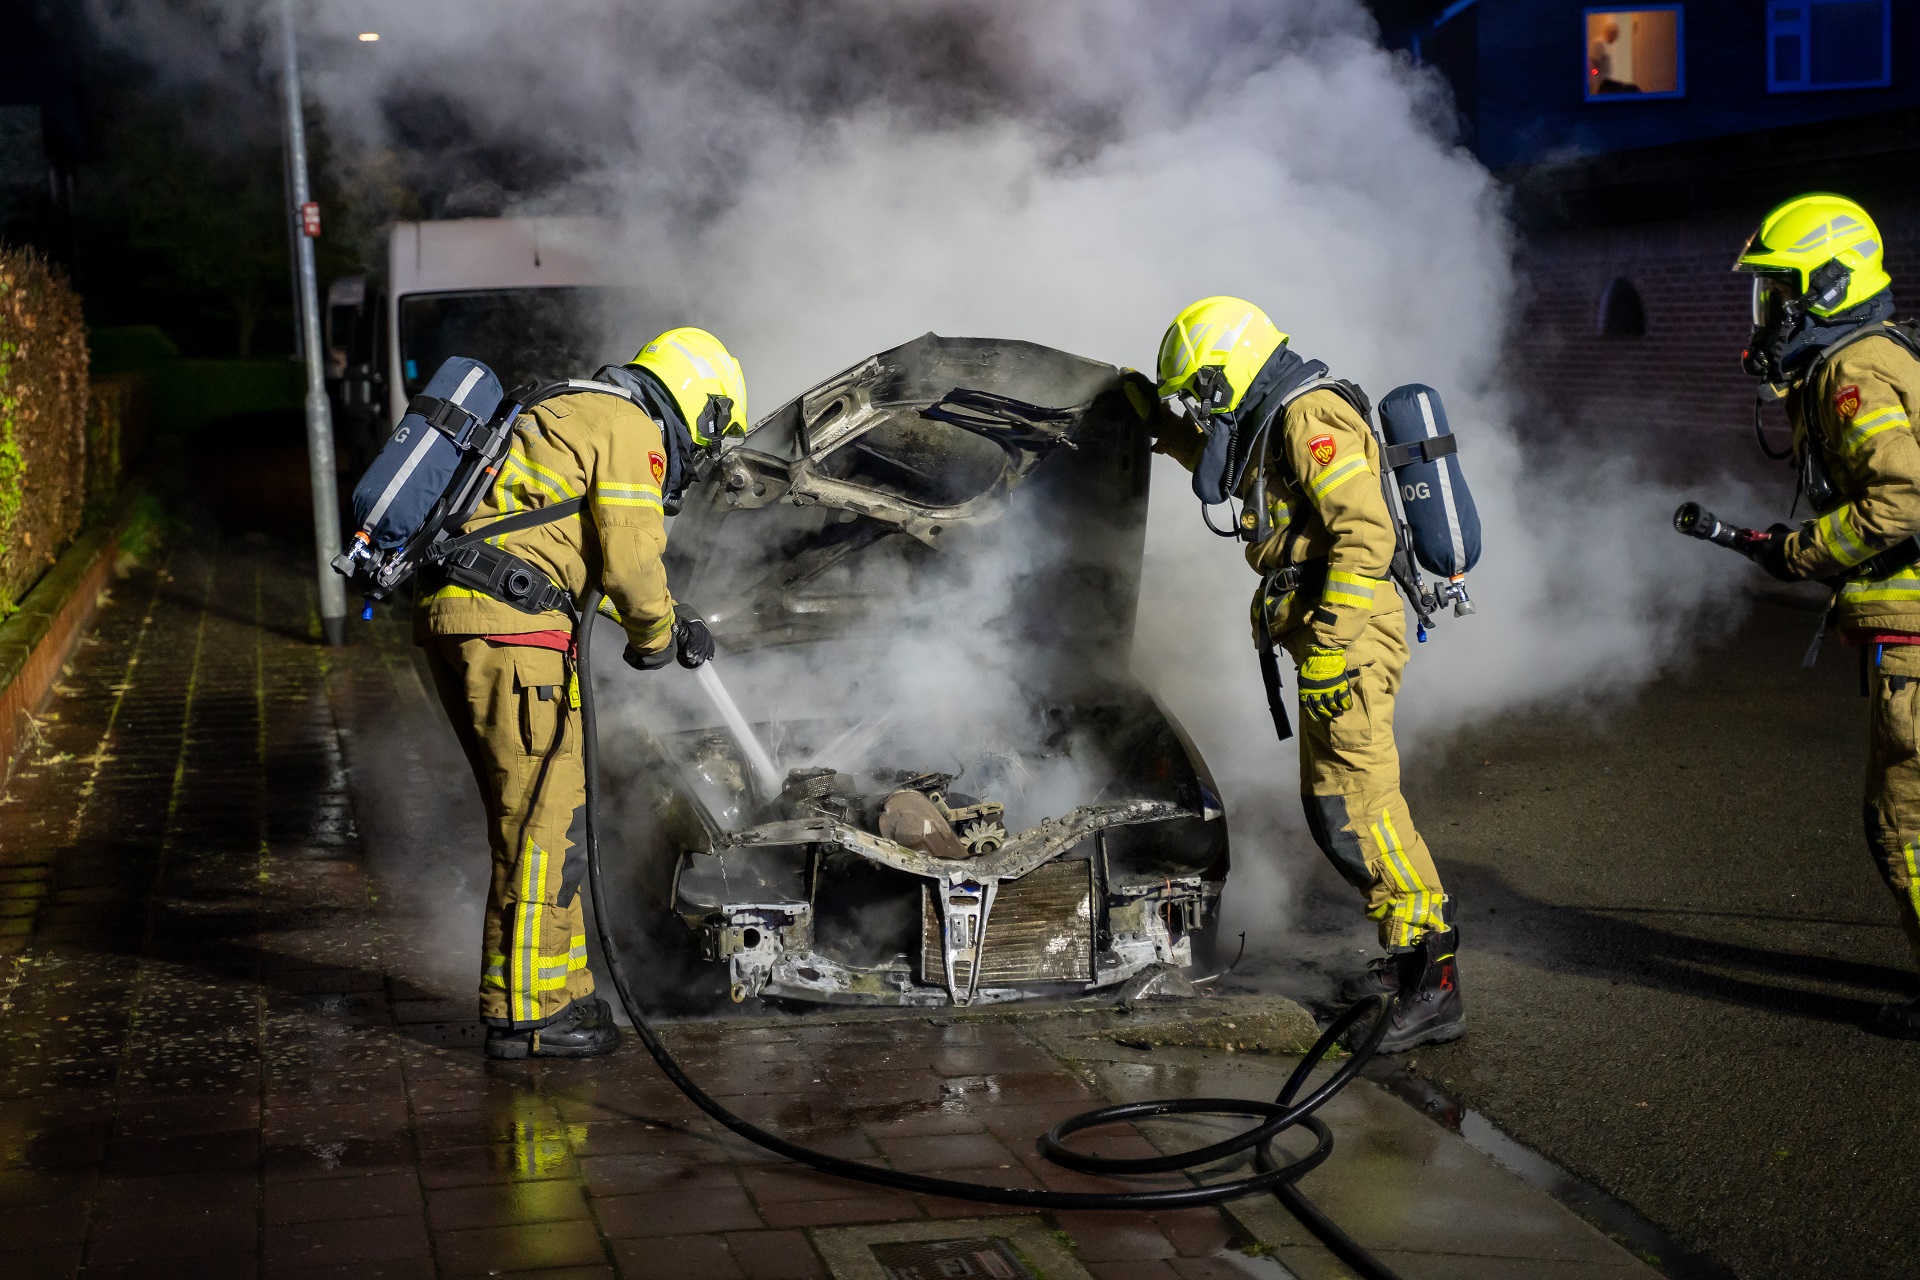 Auto vliegt in brand, politie onderzoekt brandstichting